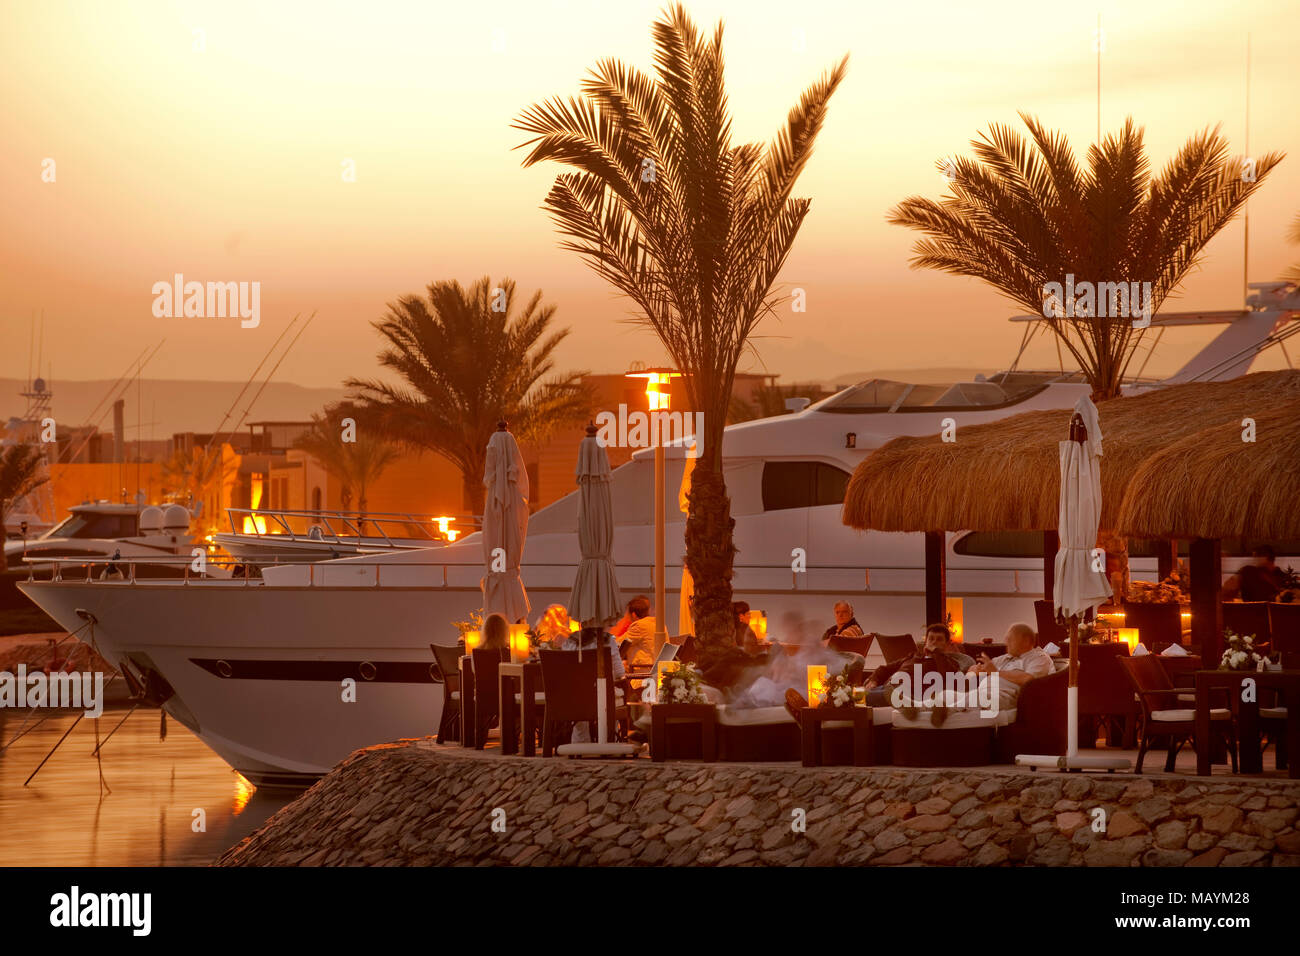 Ägypten, Kafr el Gouna, 'Moods' Restaurant & Bar in der Marina Stockfoto